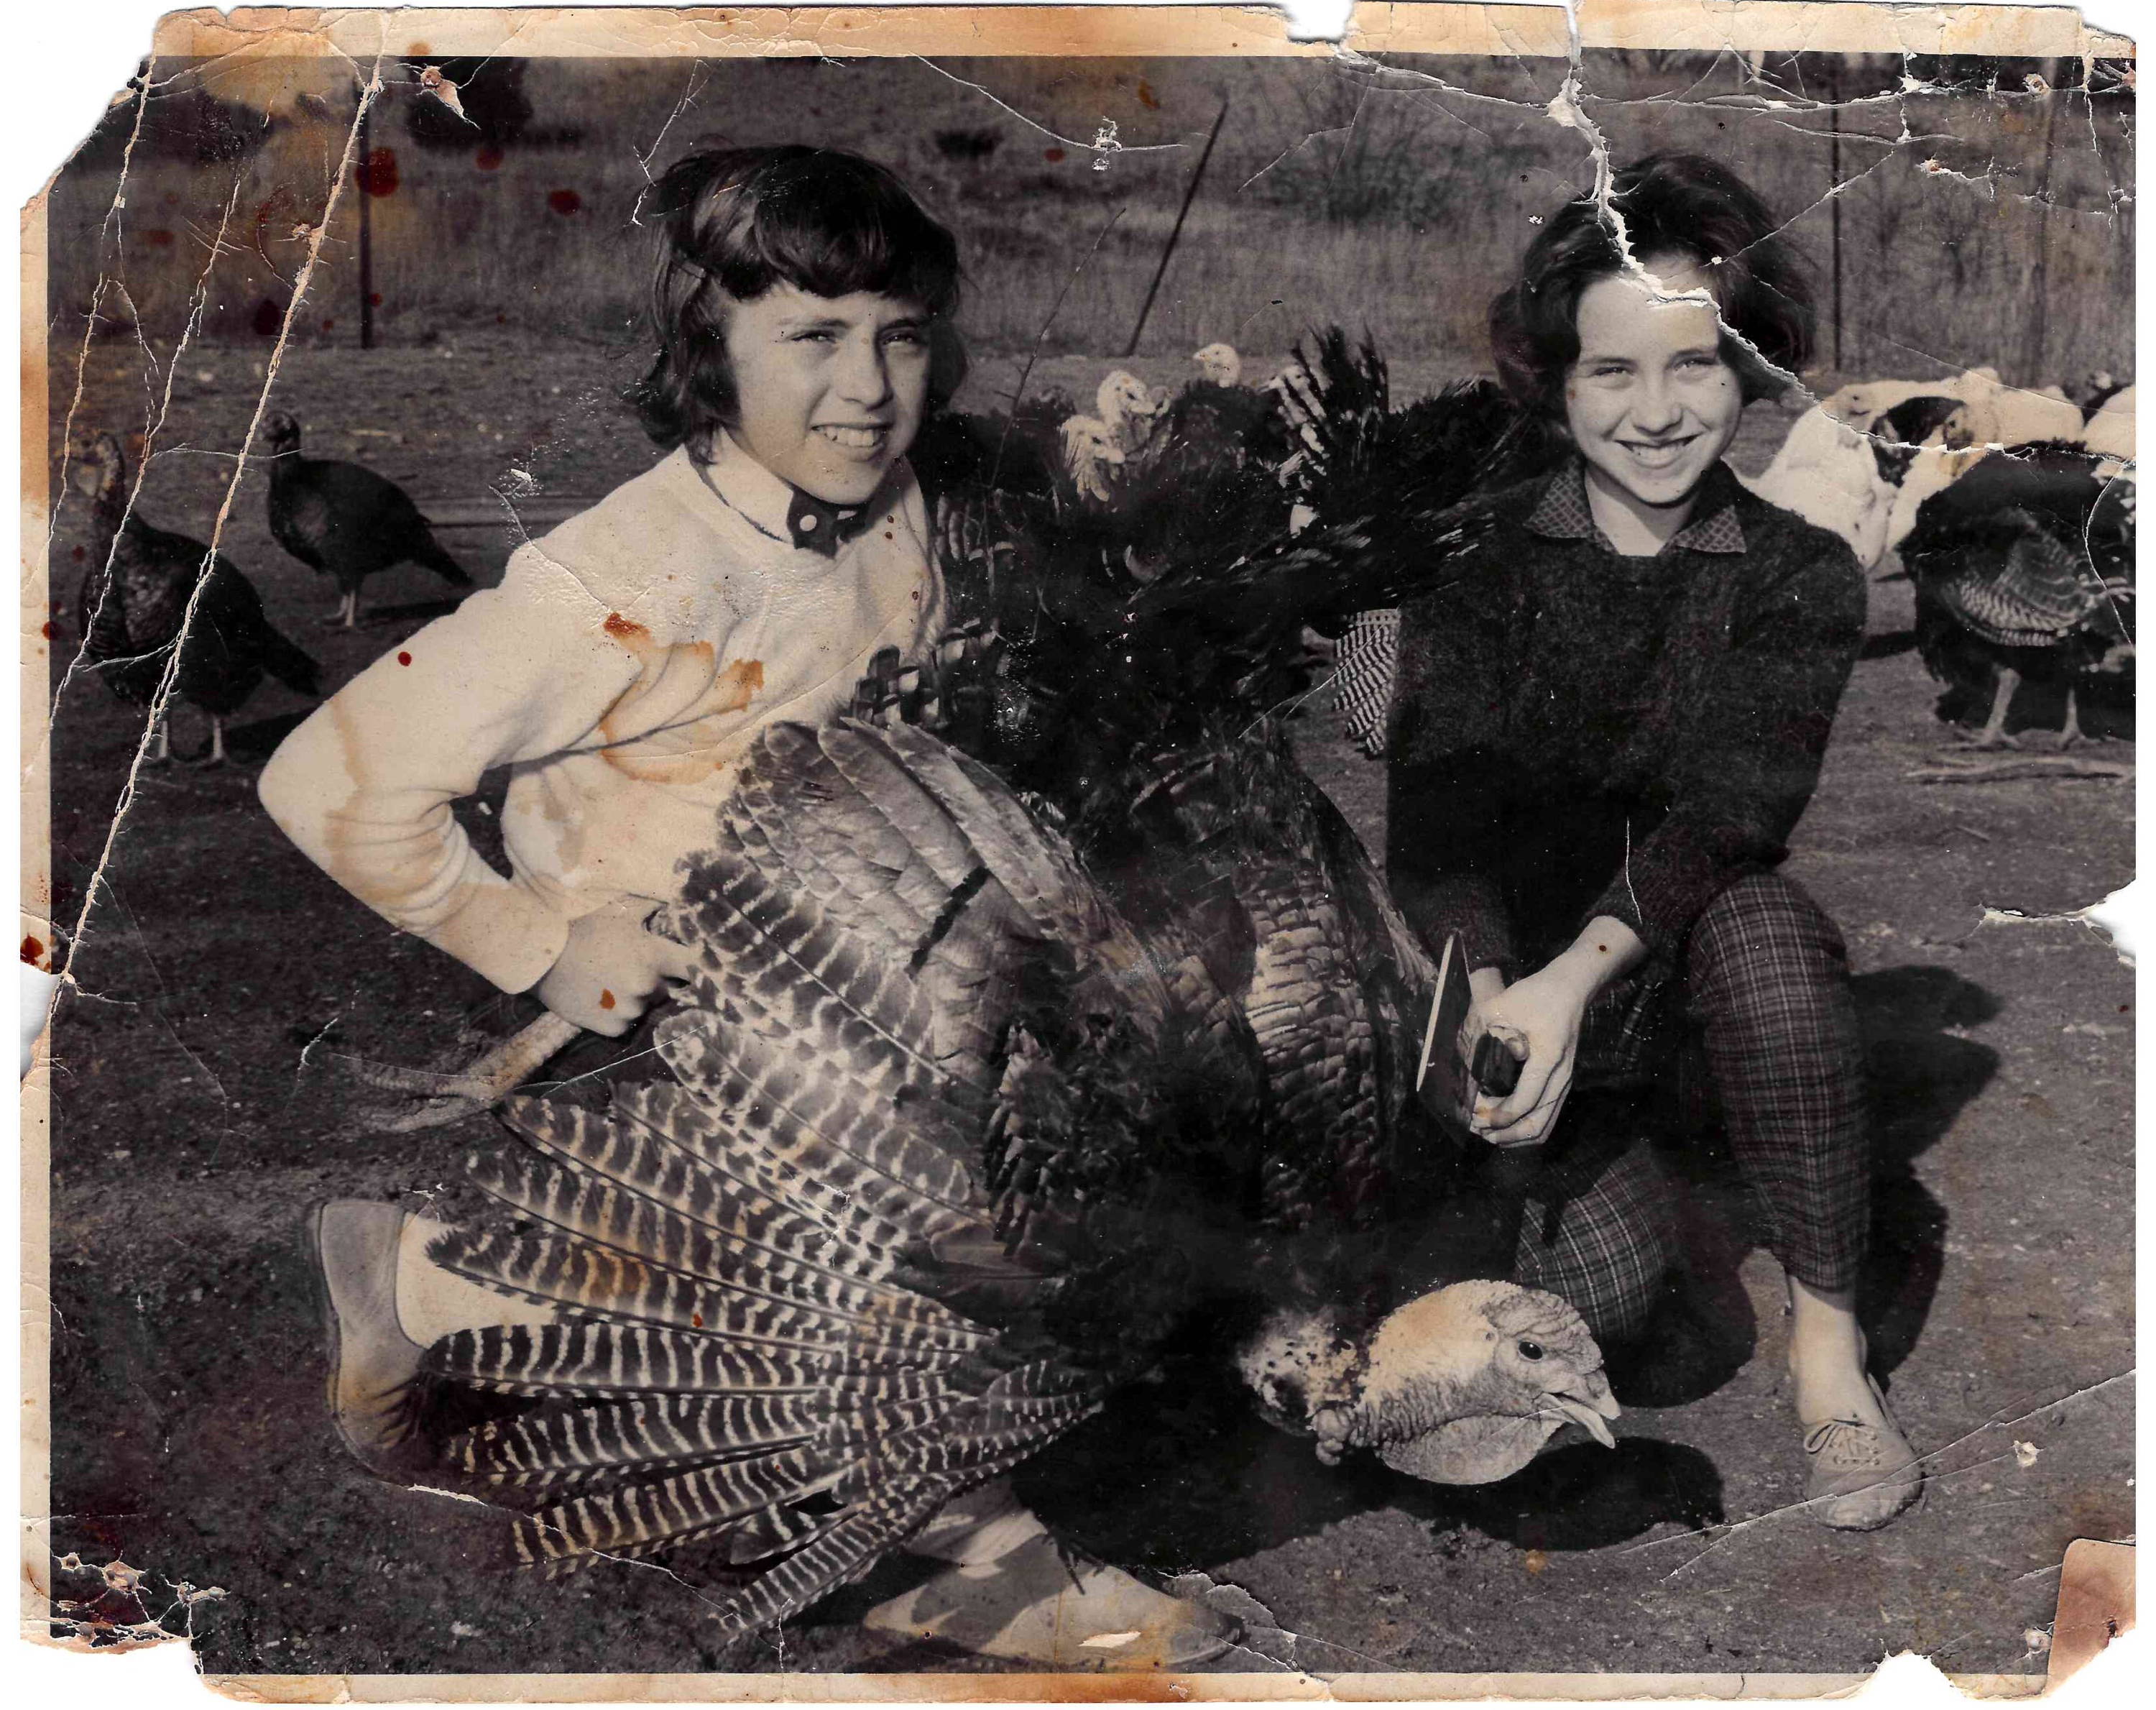 Two women kneeling on ground next to a turkey.